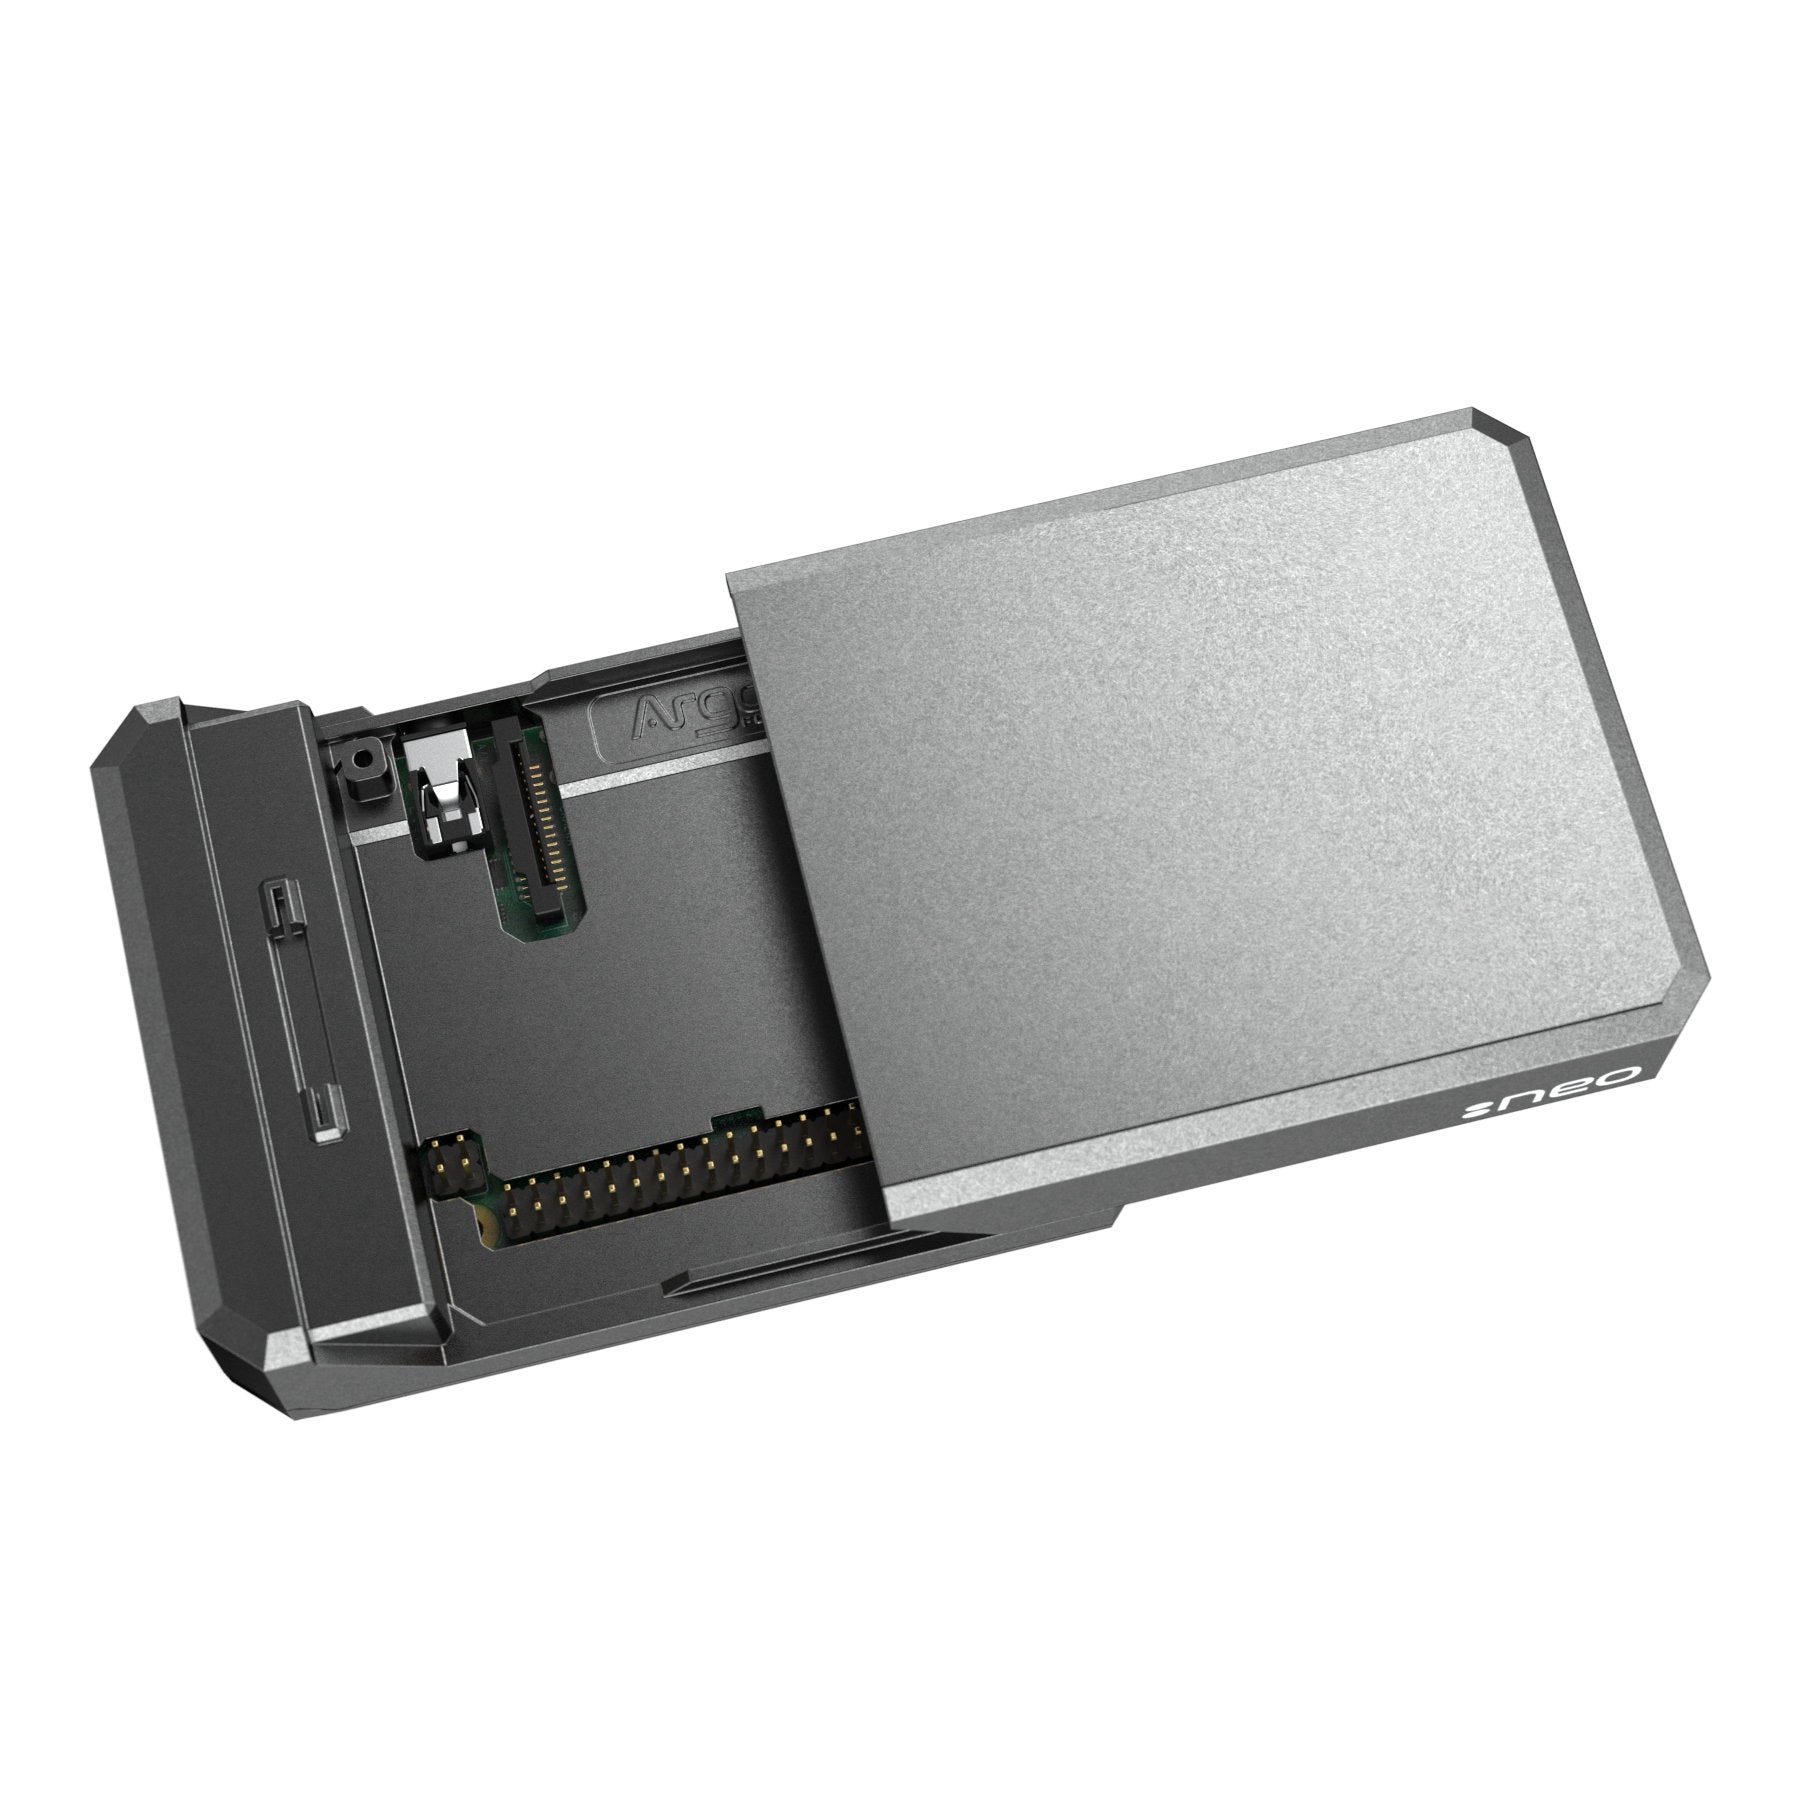 Argon Neo Raspberry Pi 4 Model B Heatsink Case | Supports Cooling Fan, Camera